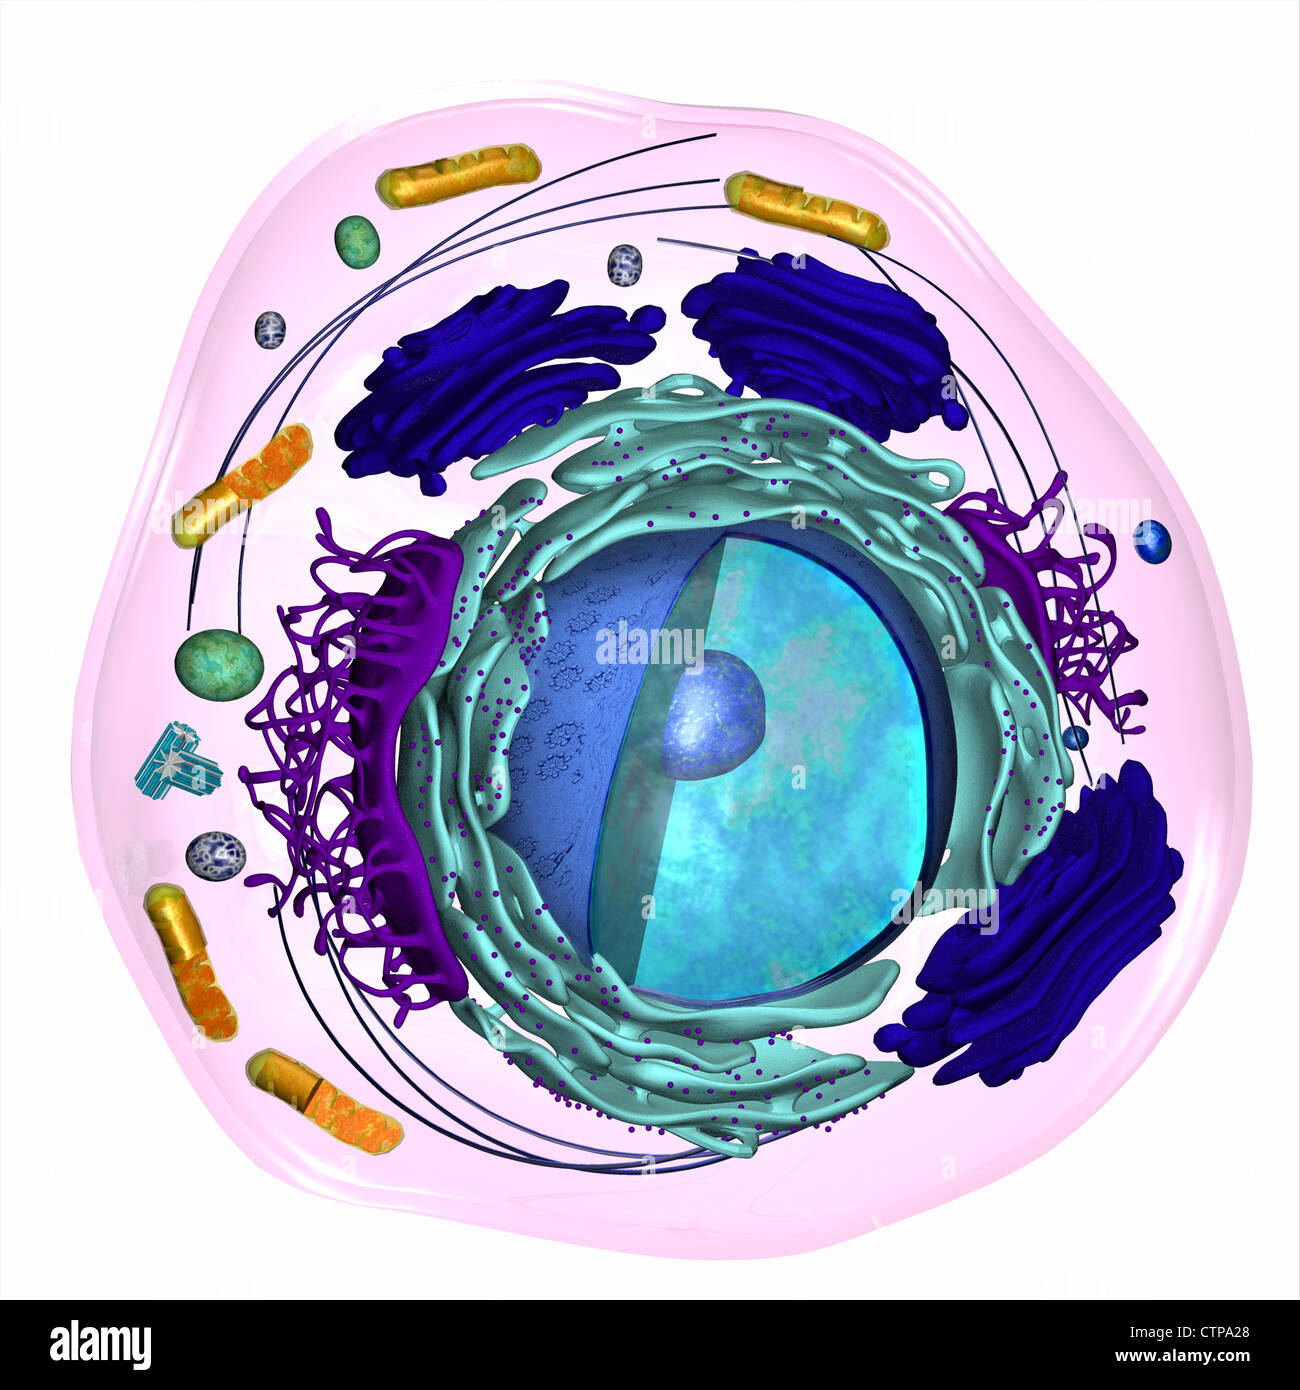 Modelo 3D de una célula eucariota Foto de stock